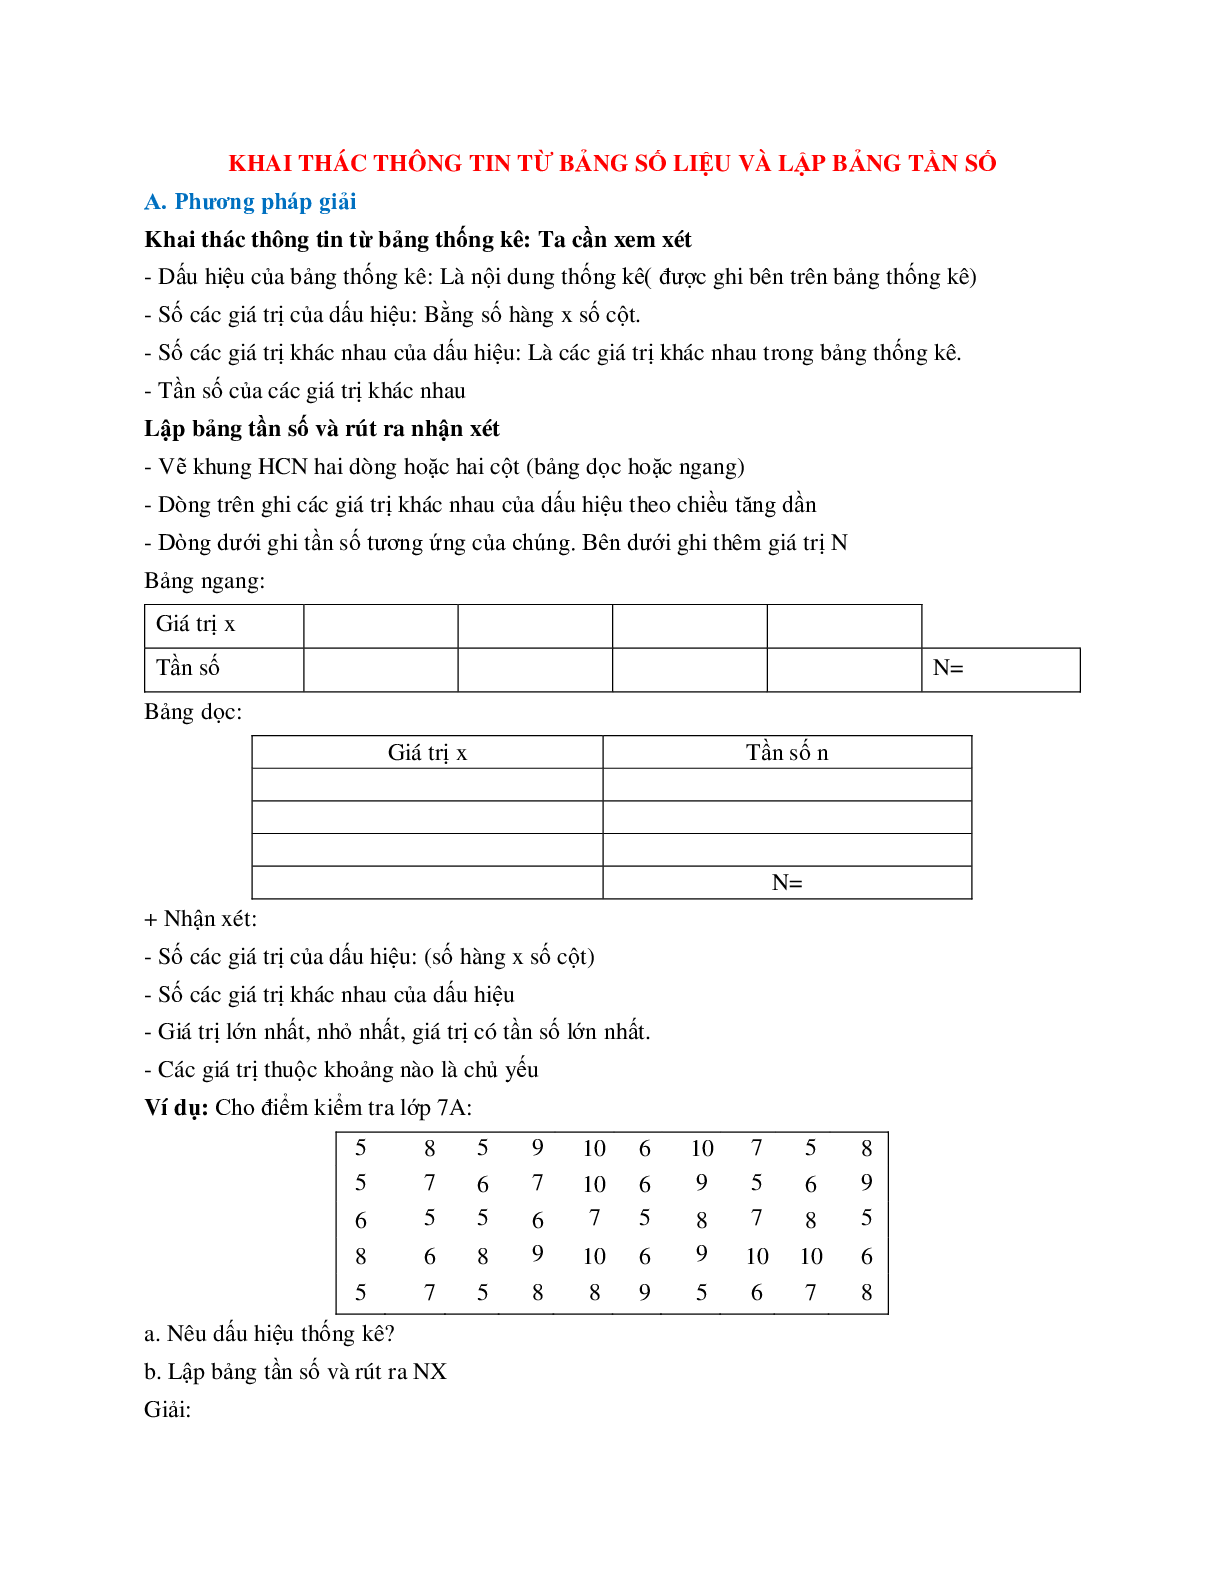 Cách giải Khai thác thông tin từ bảng số liệu và lập bảng tần số (trang 1)